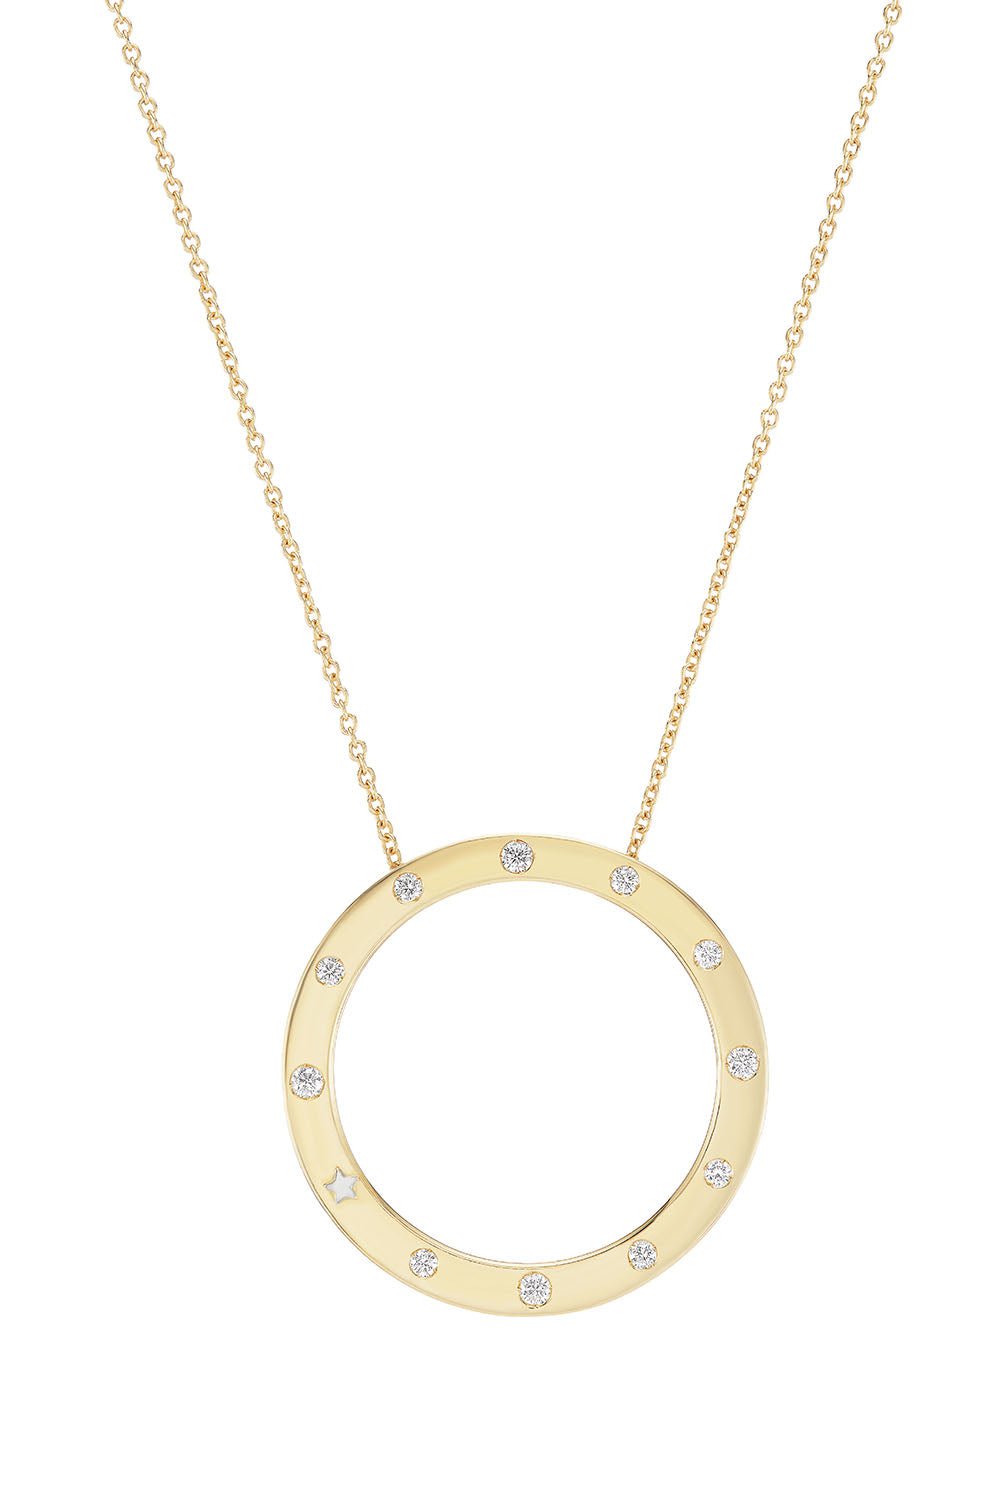 ANNA MACCIERI ROSSI-Ora Circle Pendant Necklace-YELLOW GOLD